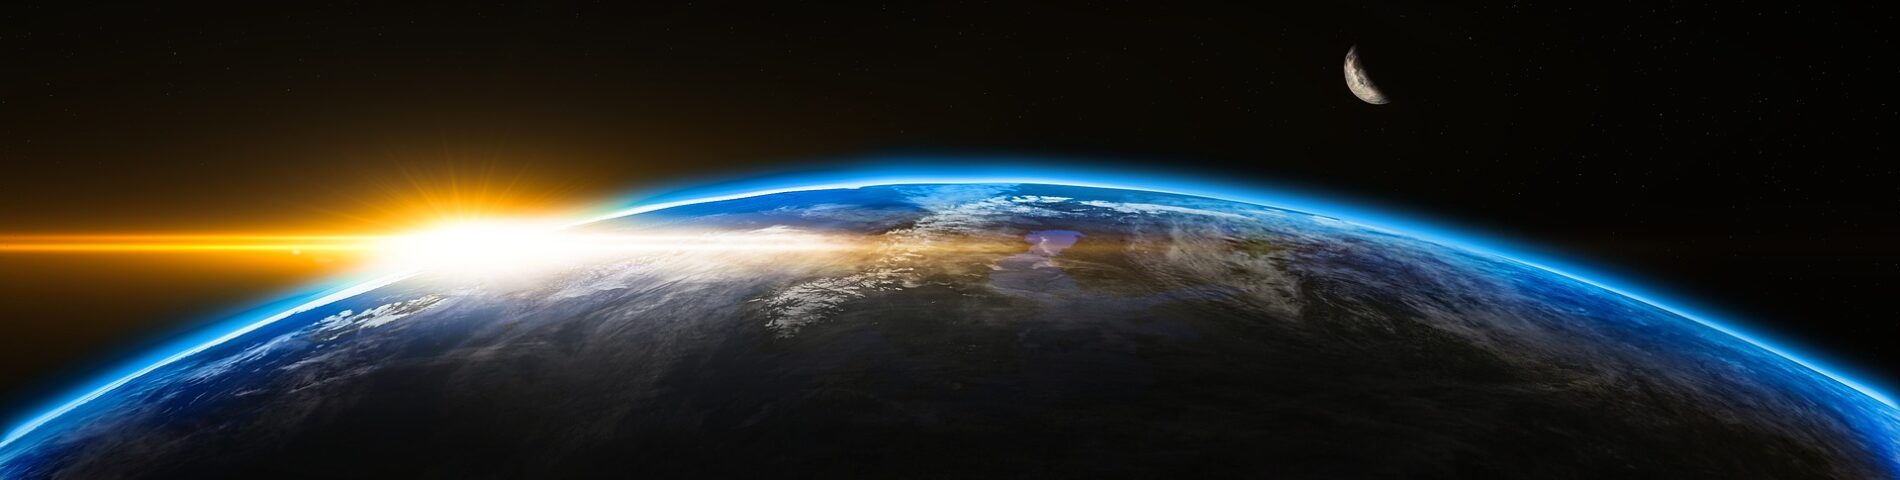 Blick auf die Erde aus Weltraumperspektive